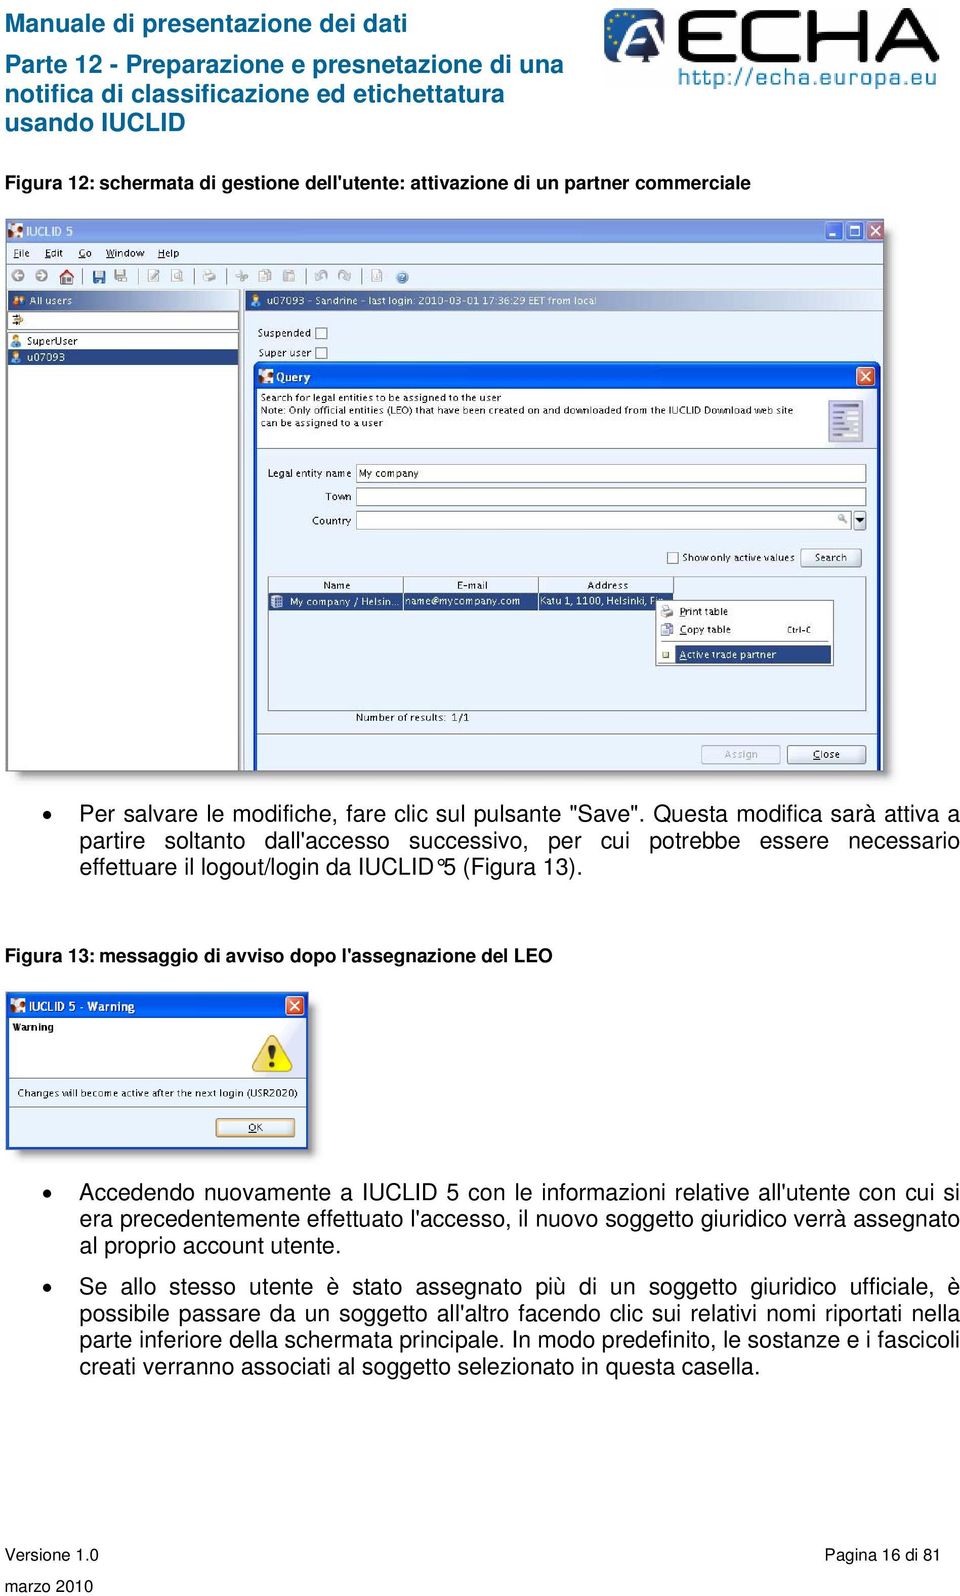 Figura 13: messaggio di avviso dopo l'assegnazione del LEO Accedendo nuovamente a IUCLID 5 con le informazioni relative all'utente con cui si era precedentemente effettuato l'accesso, il nuovo